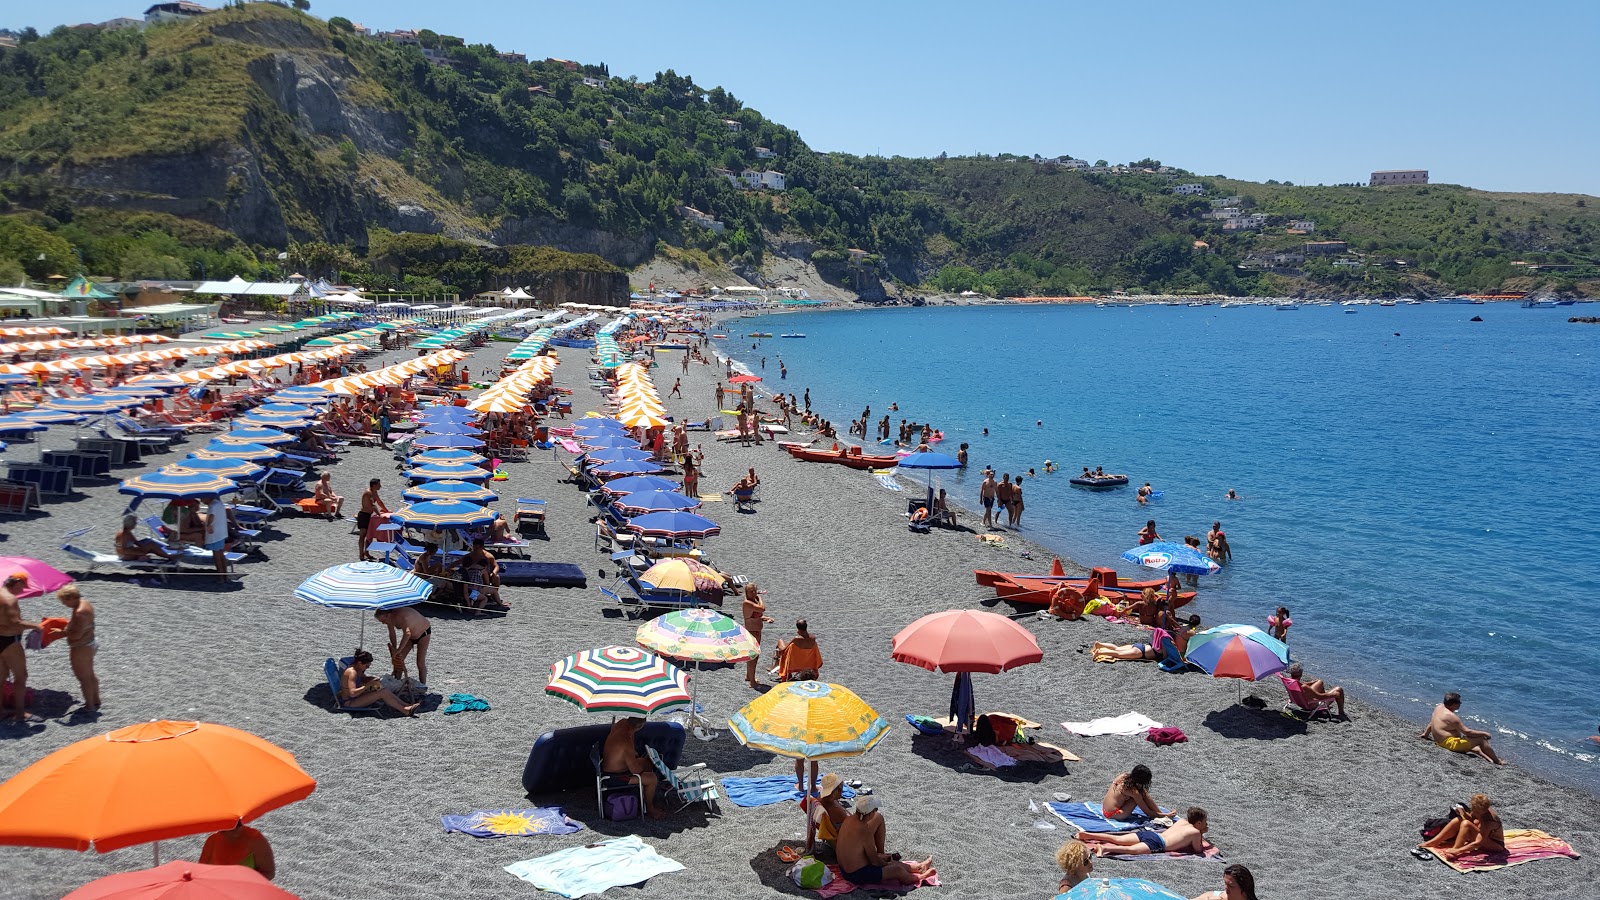 Spiaggia San Nicola Arcella'in fotoğrafı gri ince çakıl taş yüzey ile